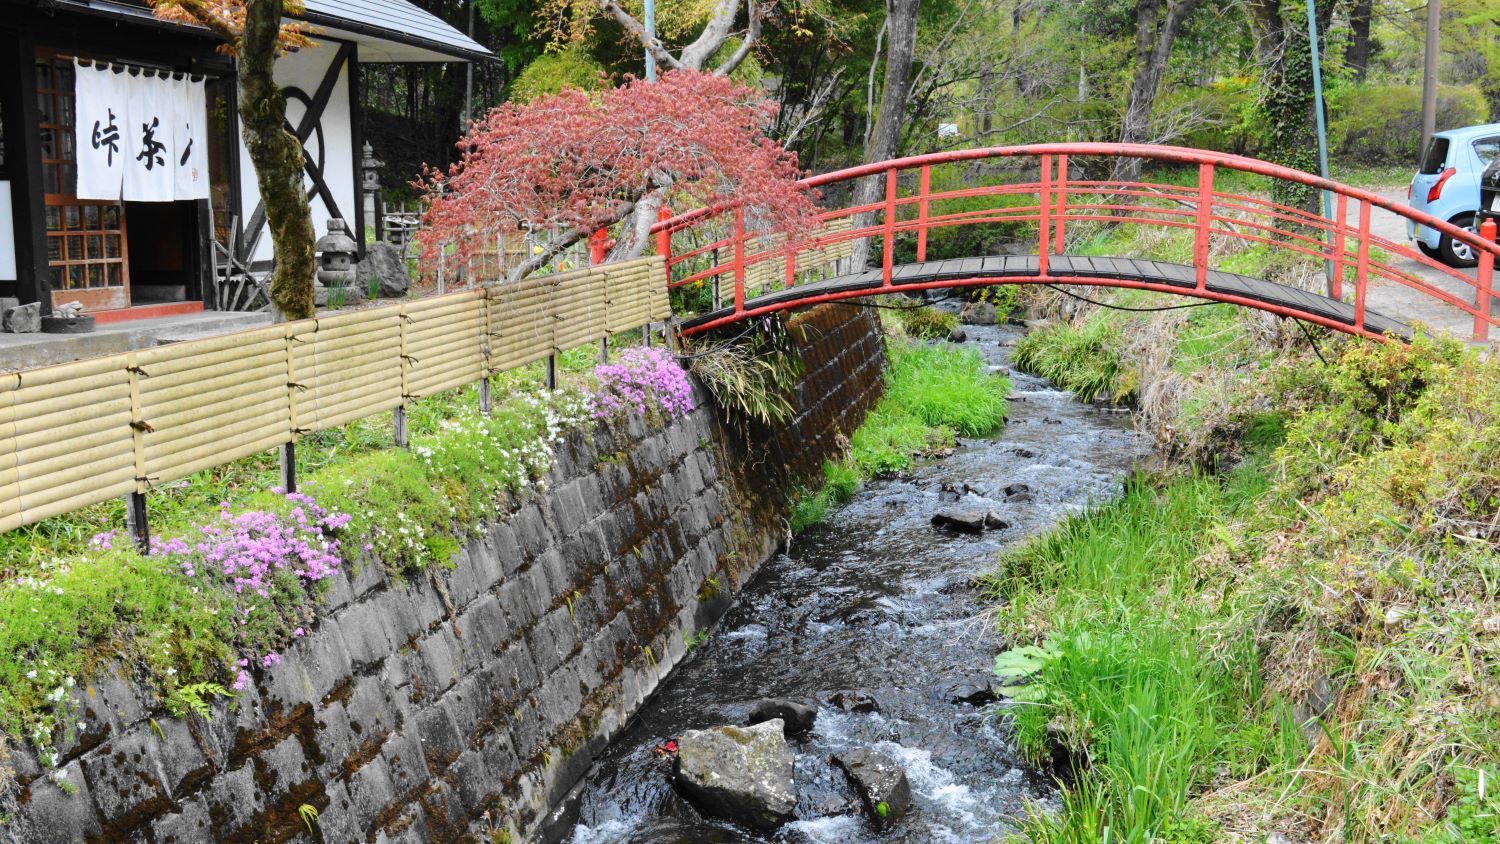 那須町峠茶屋の川に橋がかかる店の前